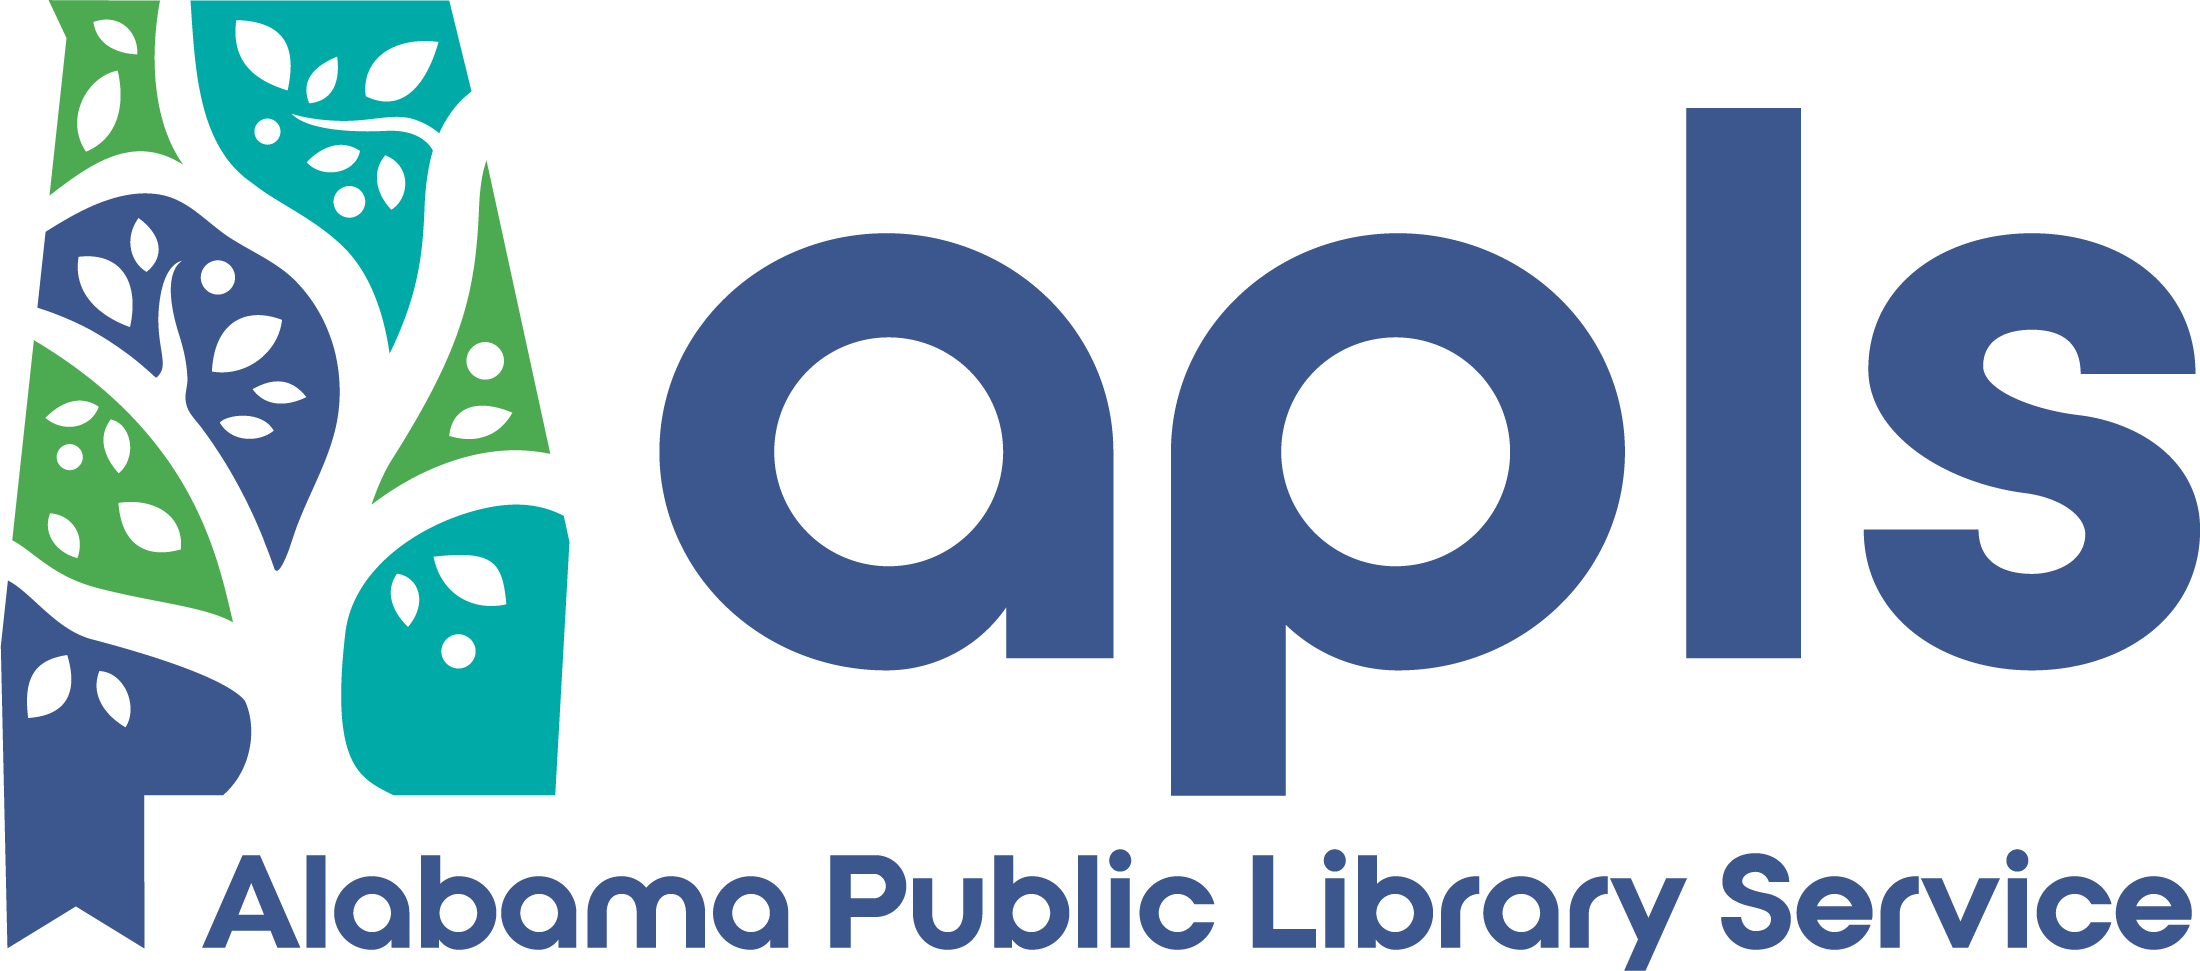 images/OPACs/APLS-logo.png